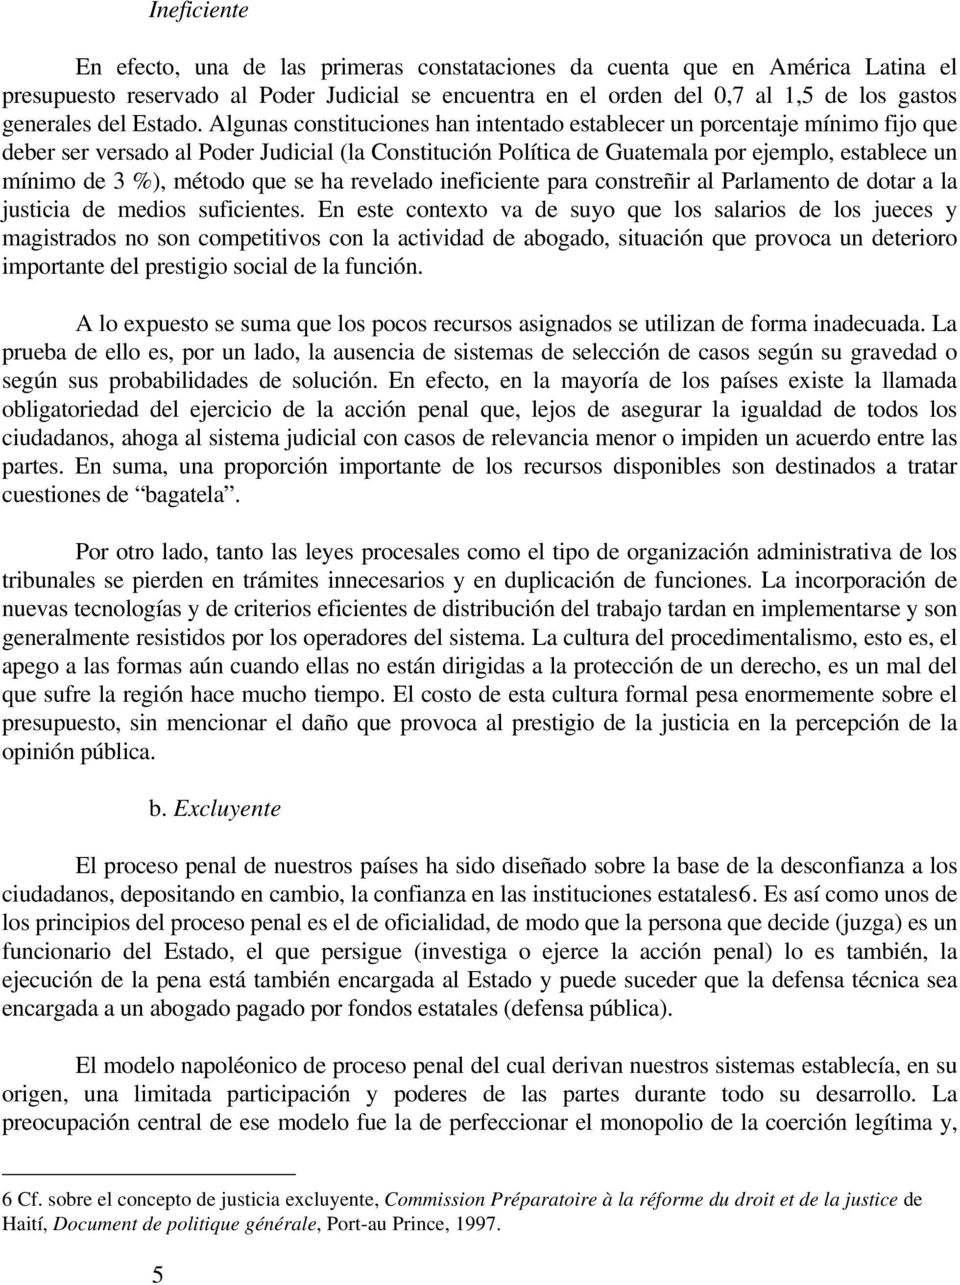 Algunas constituciones han intentado establecer un porcentaje mínimo fijo que deber ser versado al Poder Judicial (la Constitución Política de Guatemala por ejemplo, establece un mínimo de 3 %),